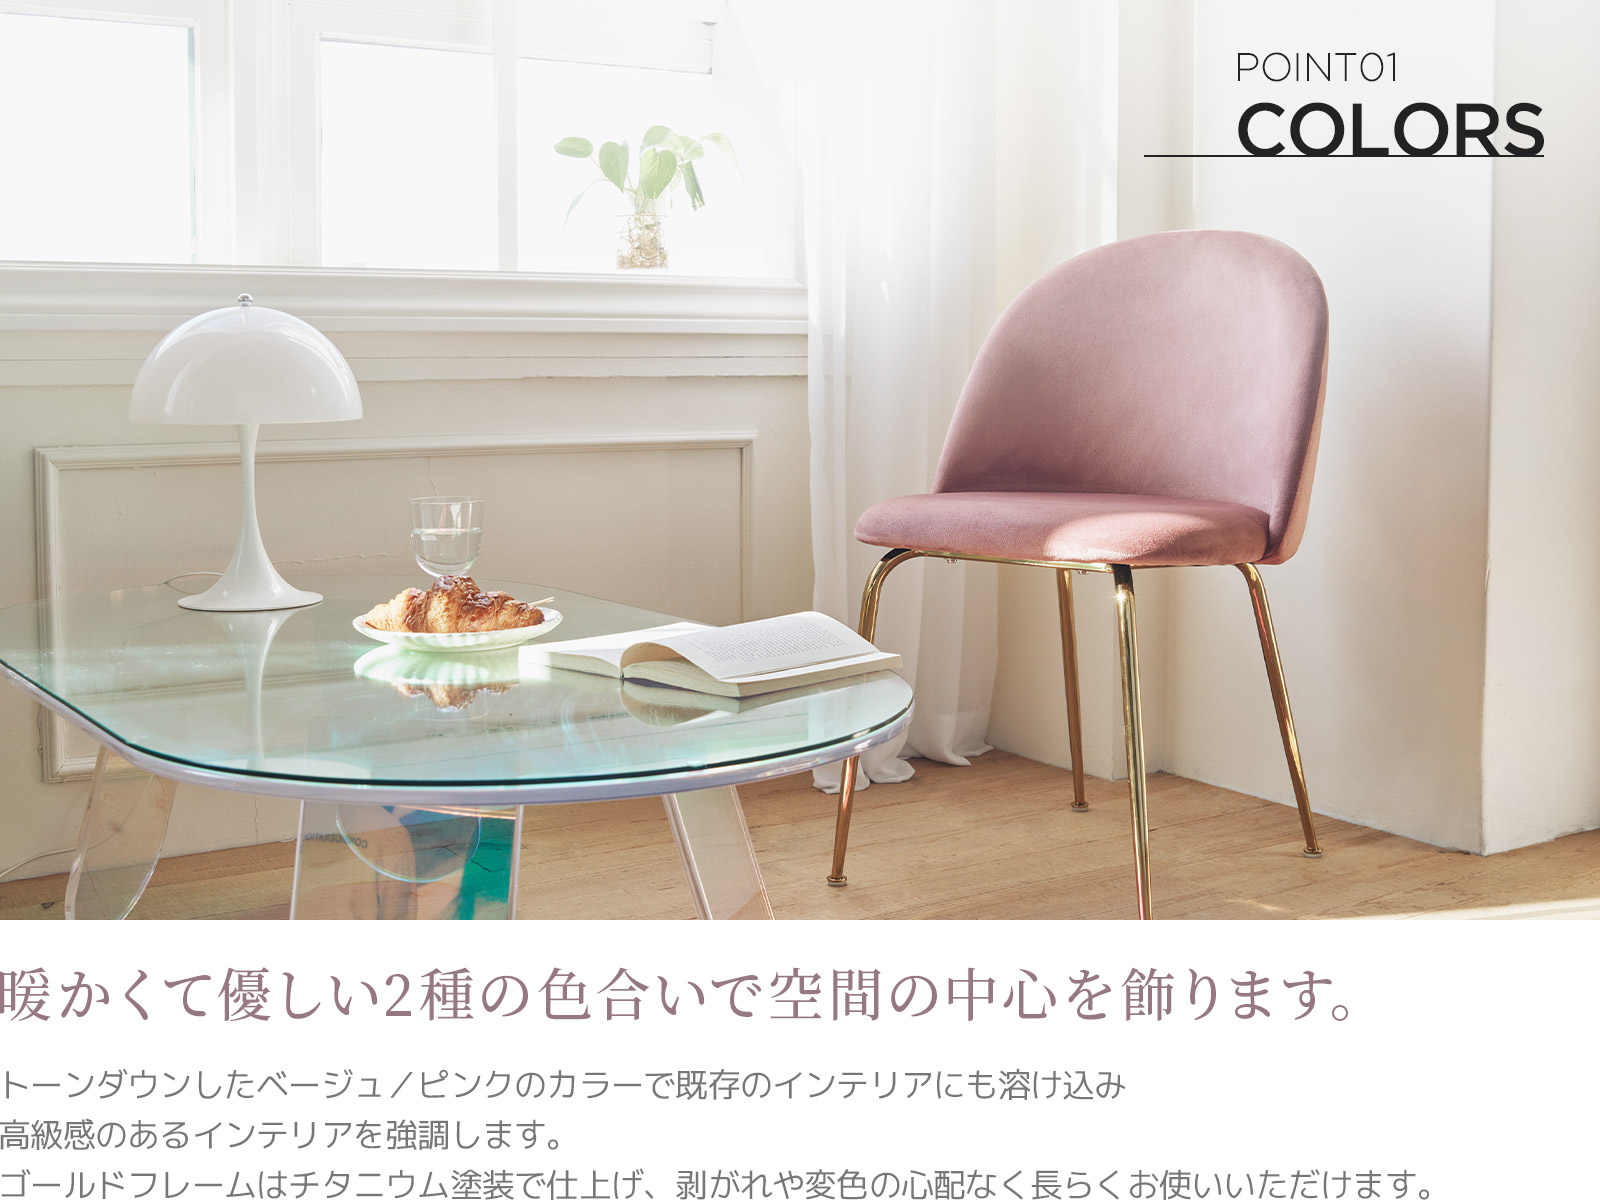 【ガラス】 ビー玉テーブルと椅子現代の椅子屋外ベルベットゴールドオフィスアクセサリープラスチック家具席シンプルなテーブル タイル